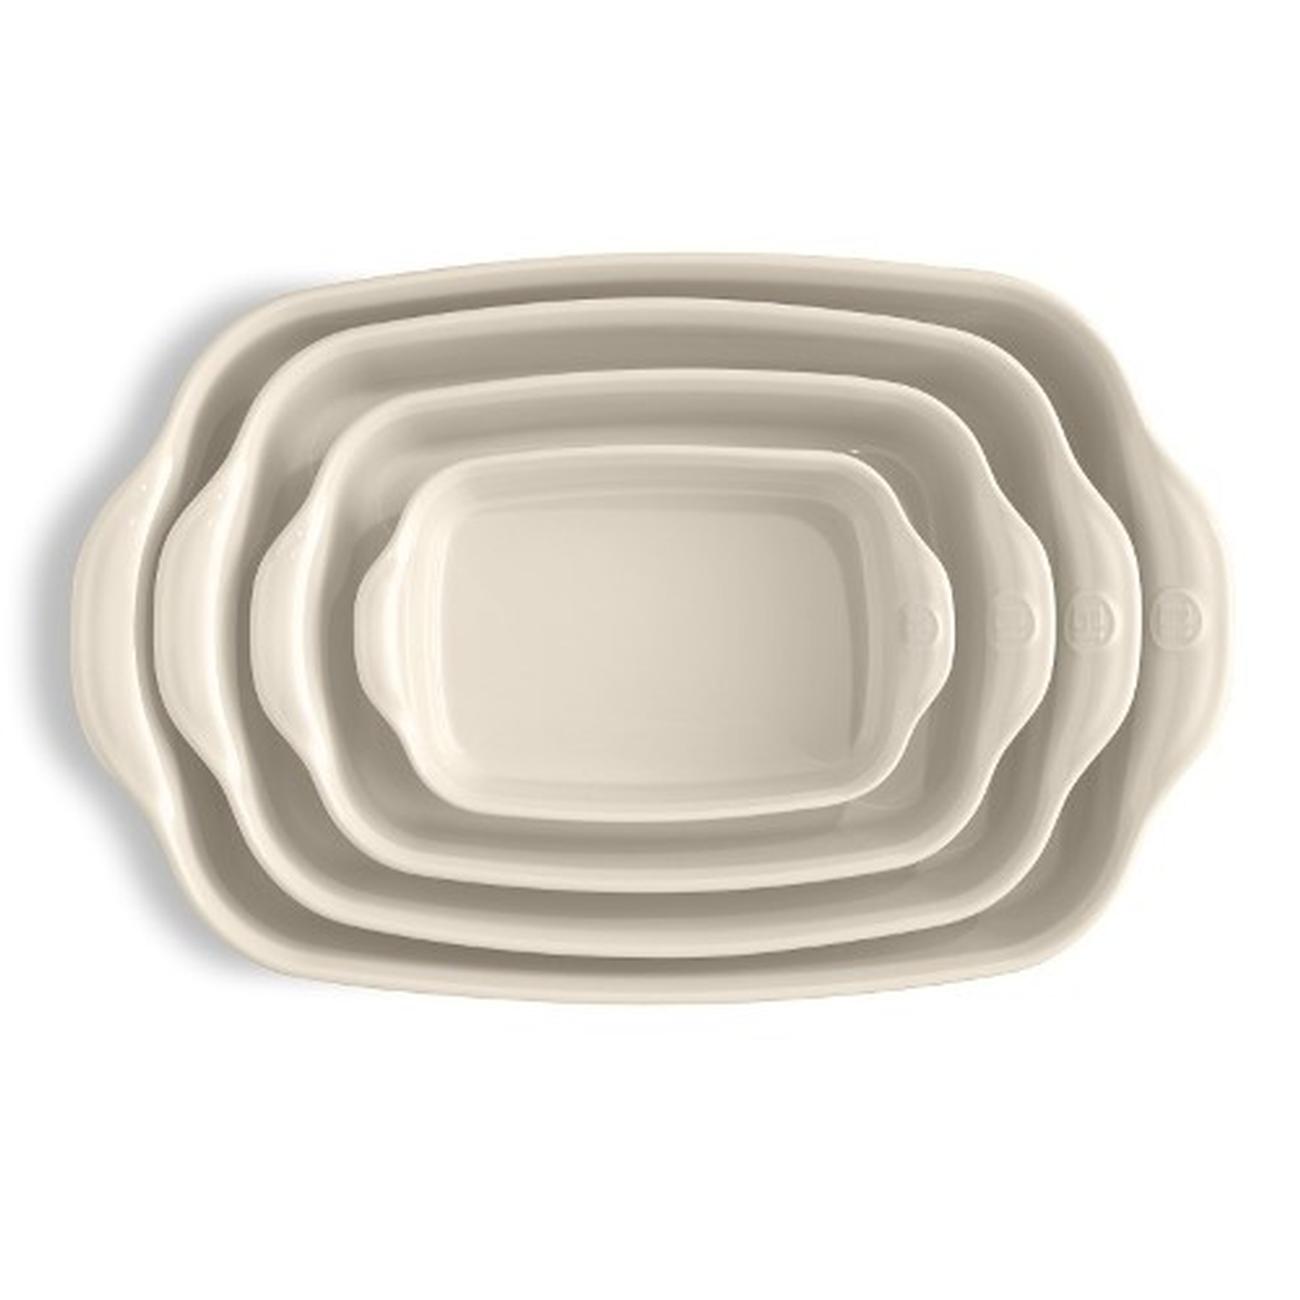 emile-henry-rectangular-oven-dish-large-argile-cream - Emile Henry Clay Rectangular Oven Dish